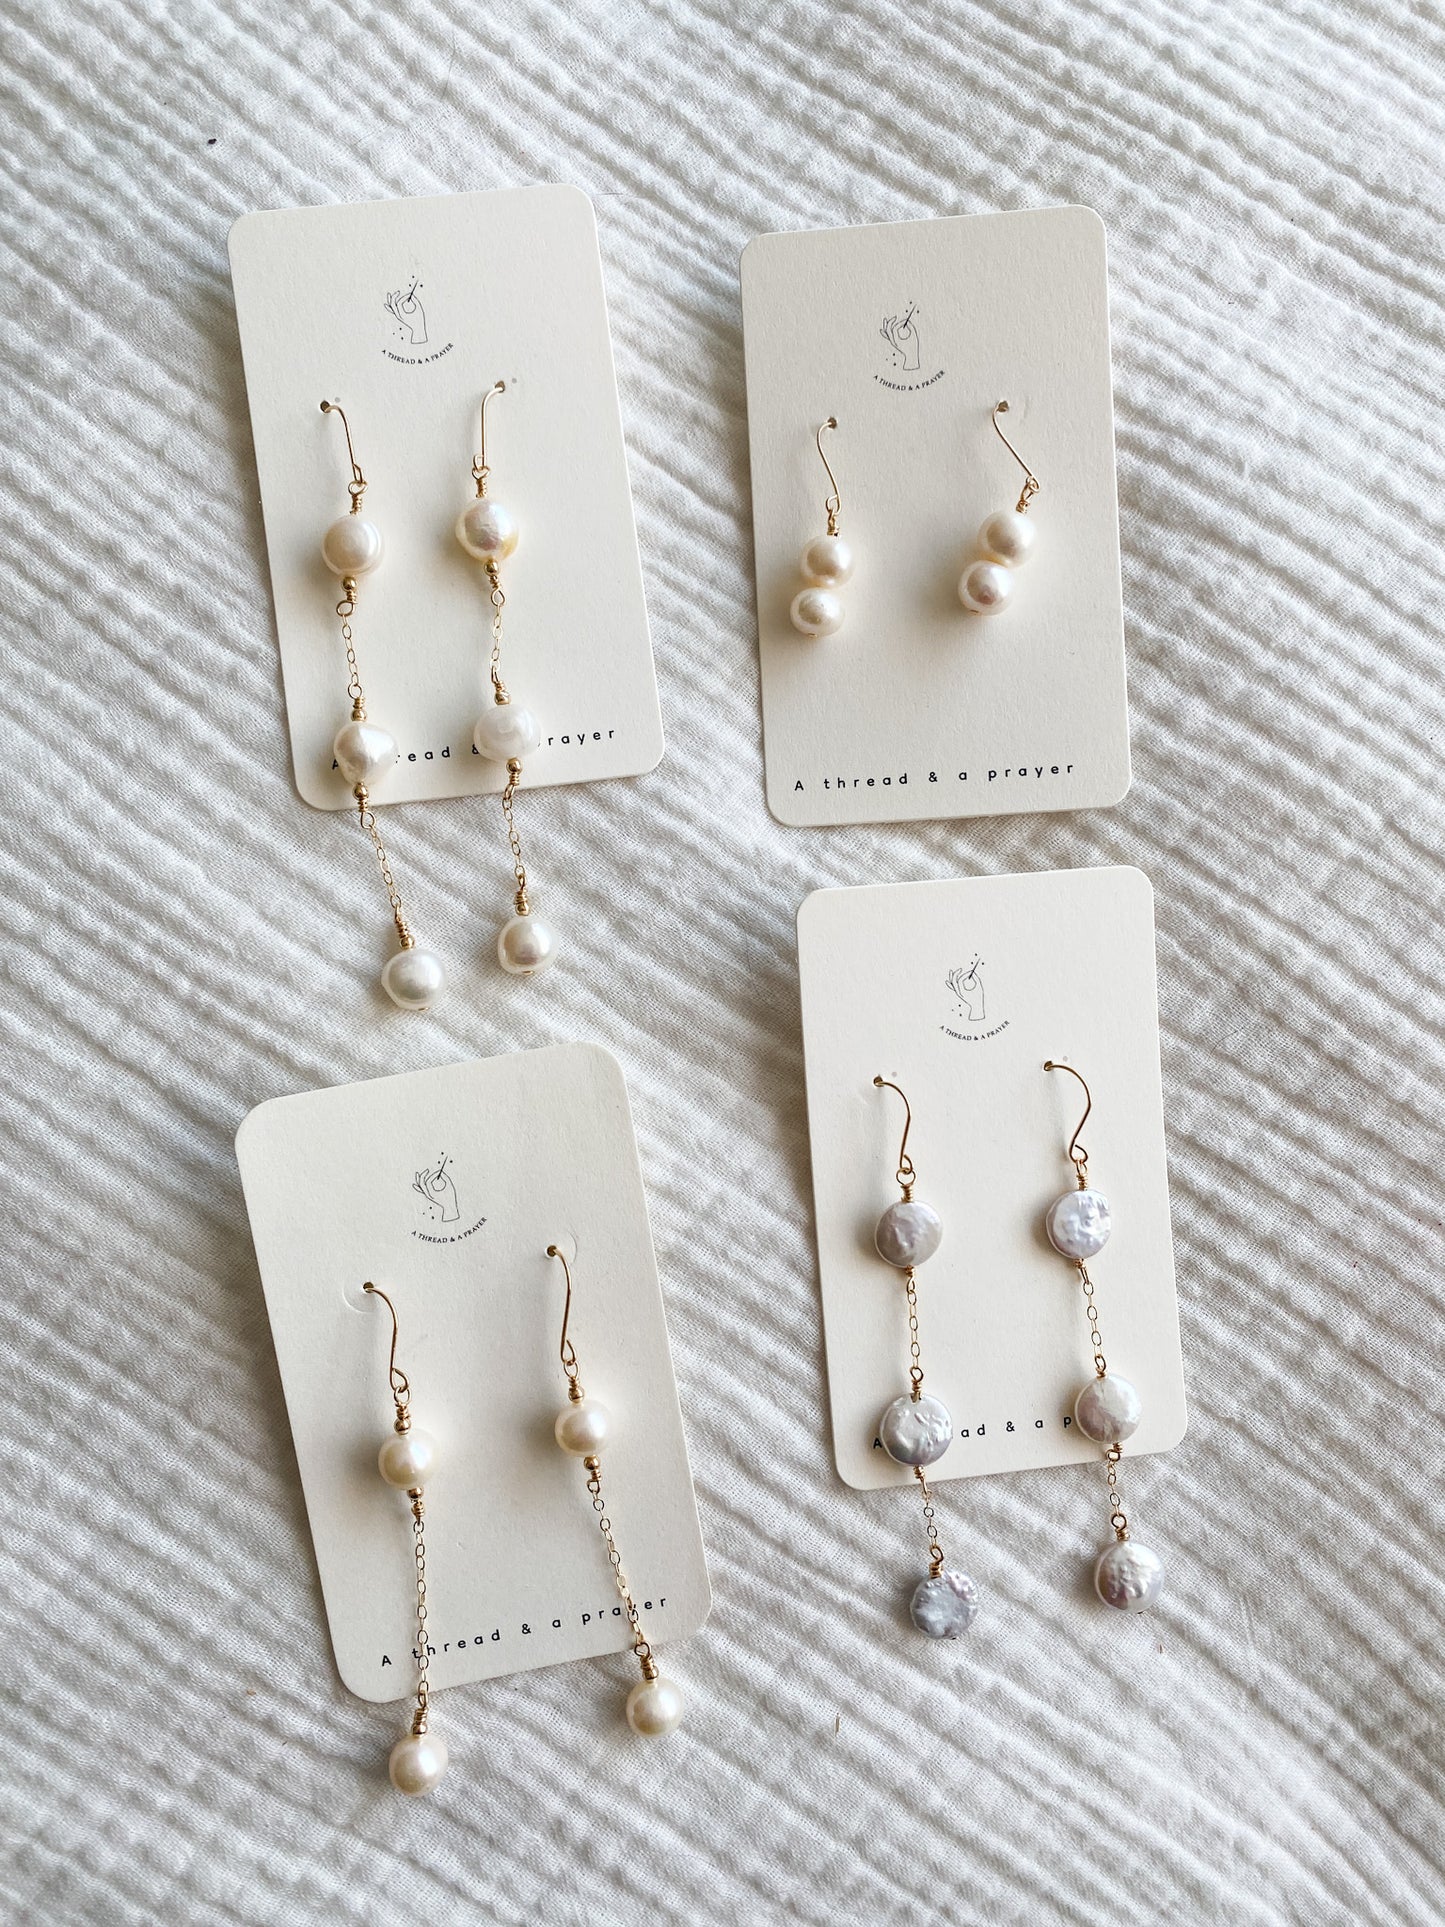 Summer Pearl Sets | Dangle Pearl Earrings | Freshwater Pearls | Gold Fill Earrings | Dainty Earrings